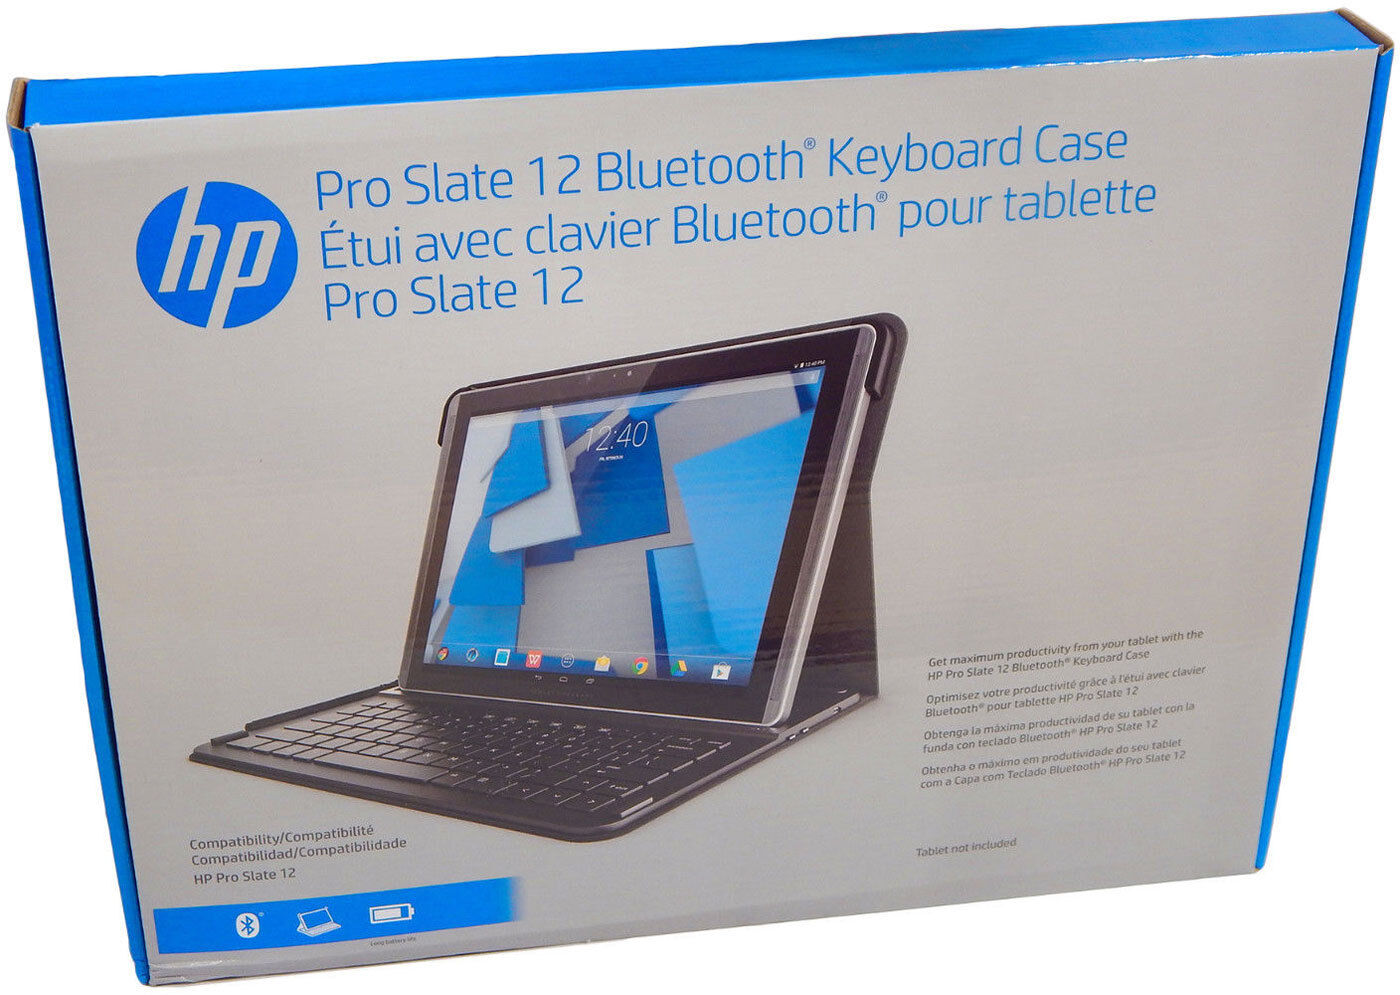 HP Pro Slate 12 BT Keyboard Case US English 801341-001 New Retail K4U66AA#ABA